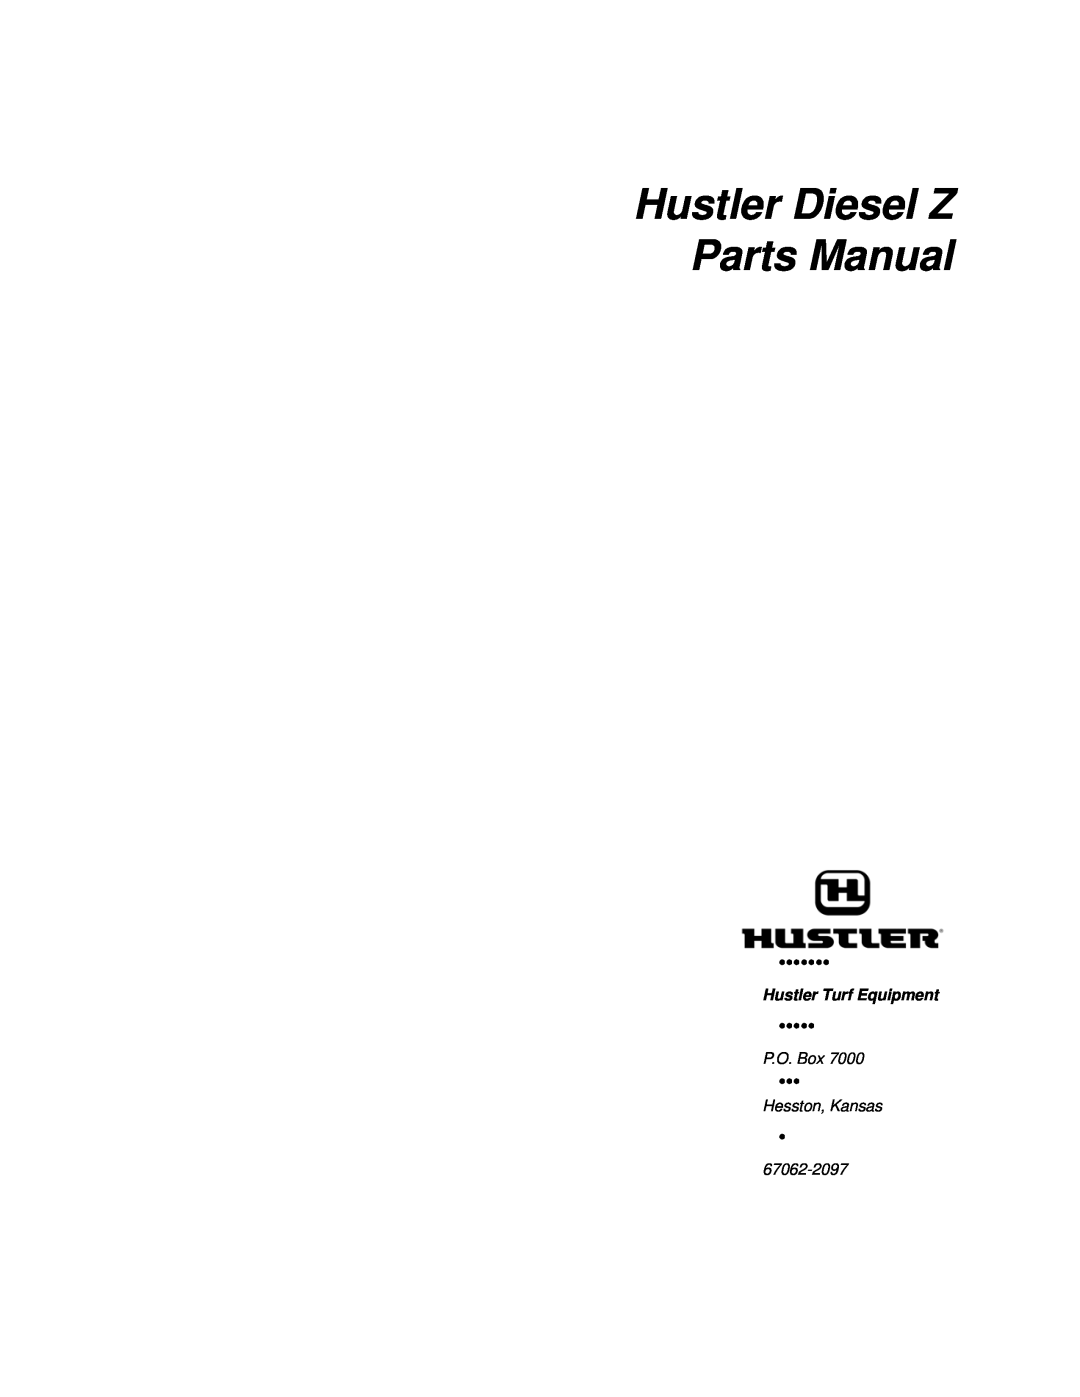 Hustler Turf manual Hustler Diesel Z Parts Manual, Hustler Turf Equipment, P.O. Box, Hesston, Kansas, 67062-2097 